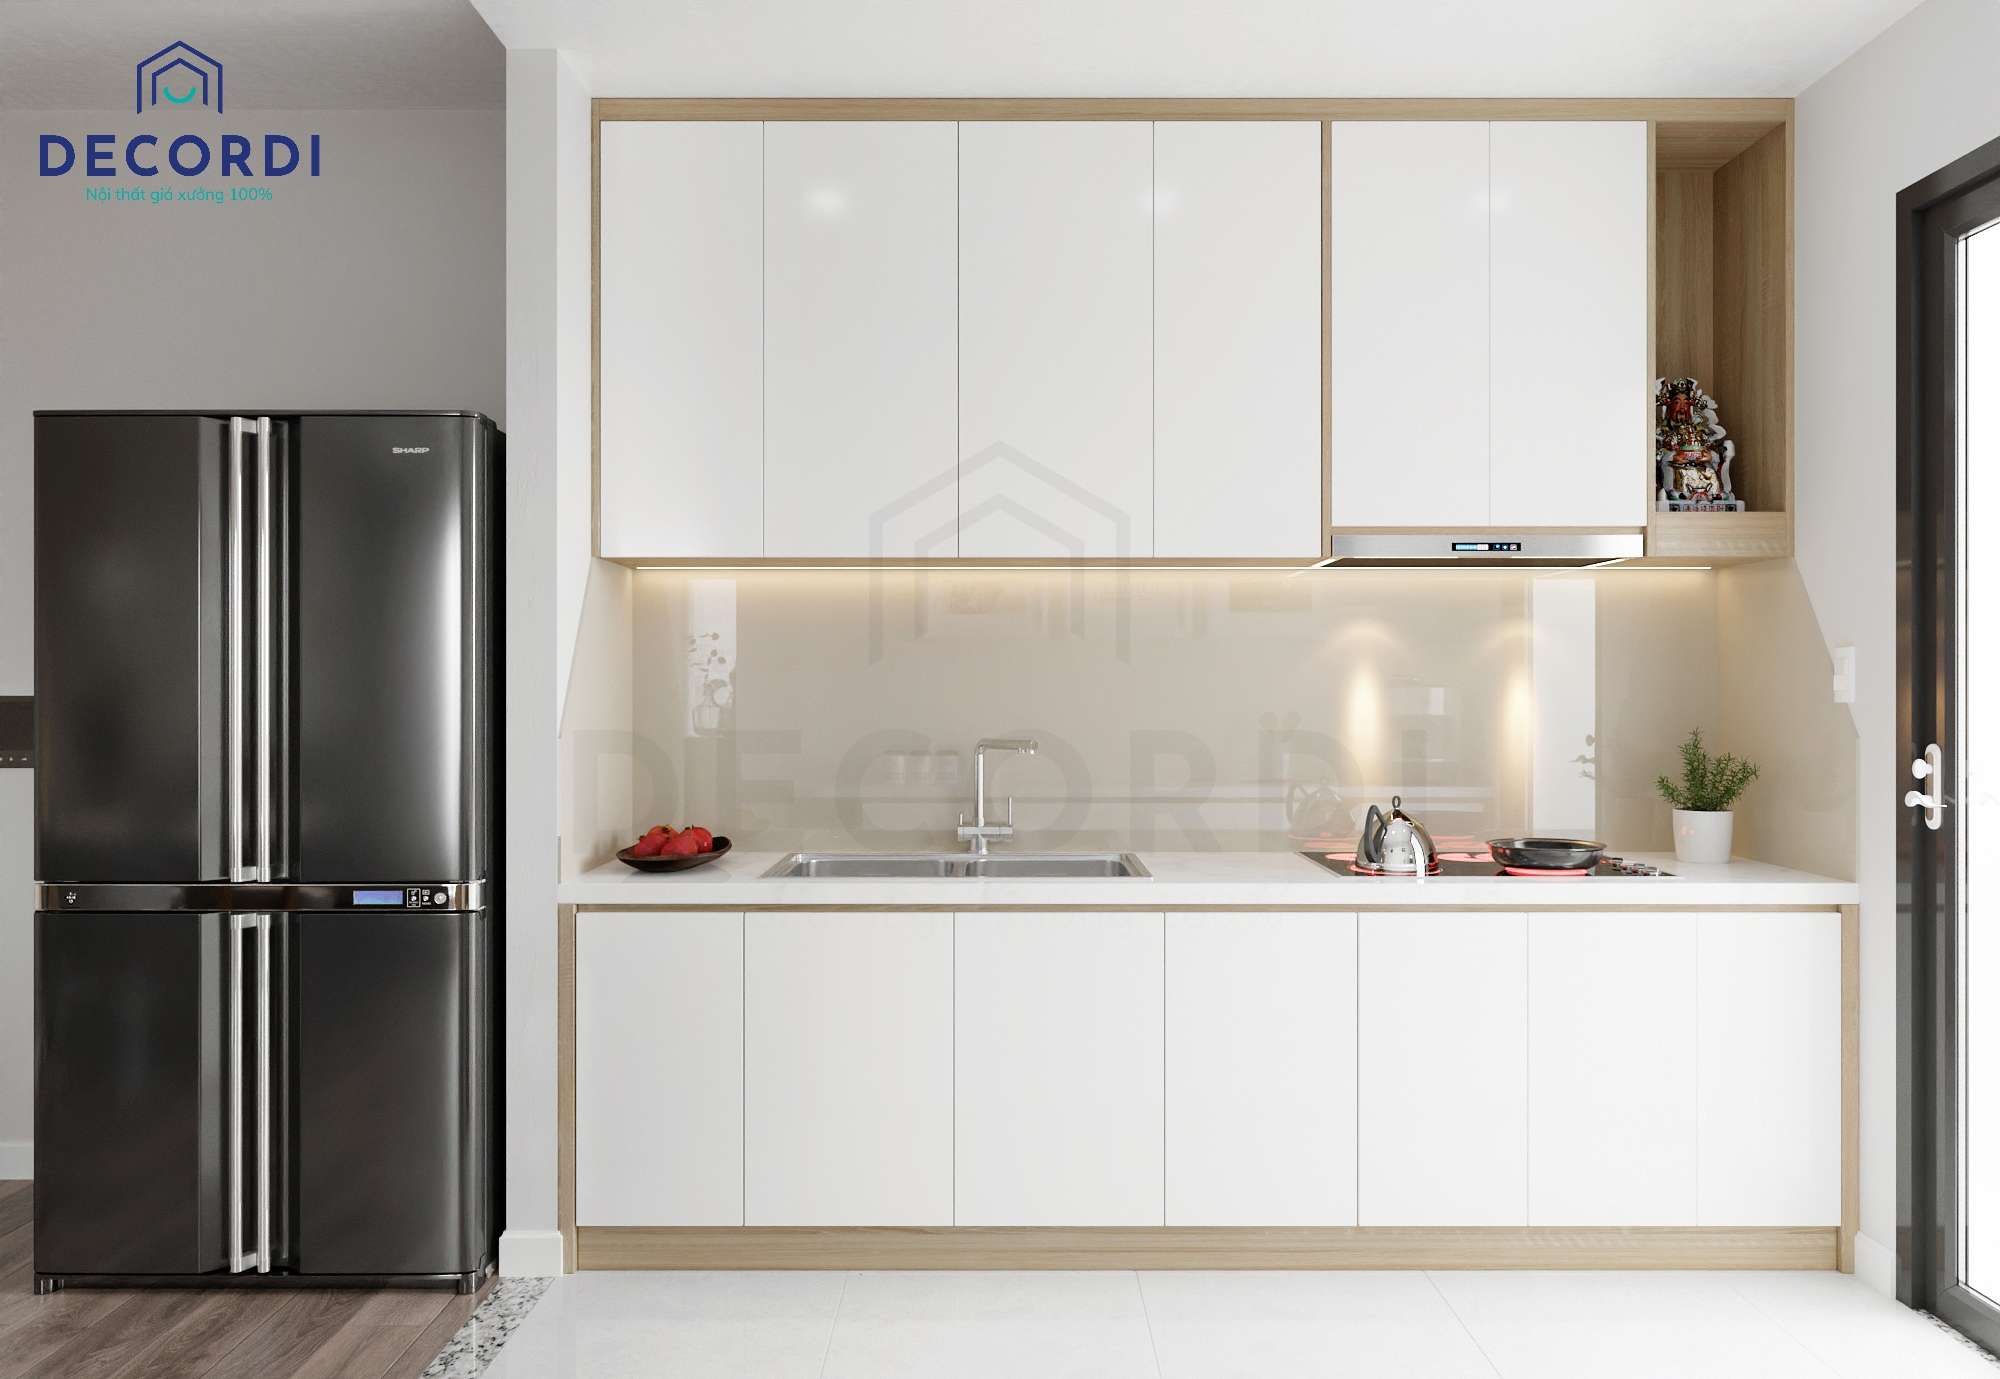 Thiết kế nội thất phòng bếp chung cư với tủ bếp chữ I nhỏ gọn, hiện đại 